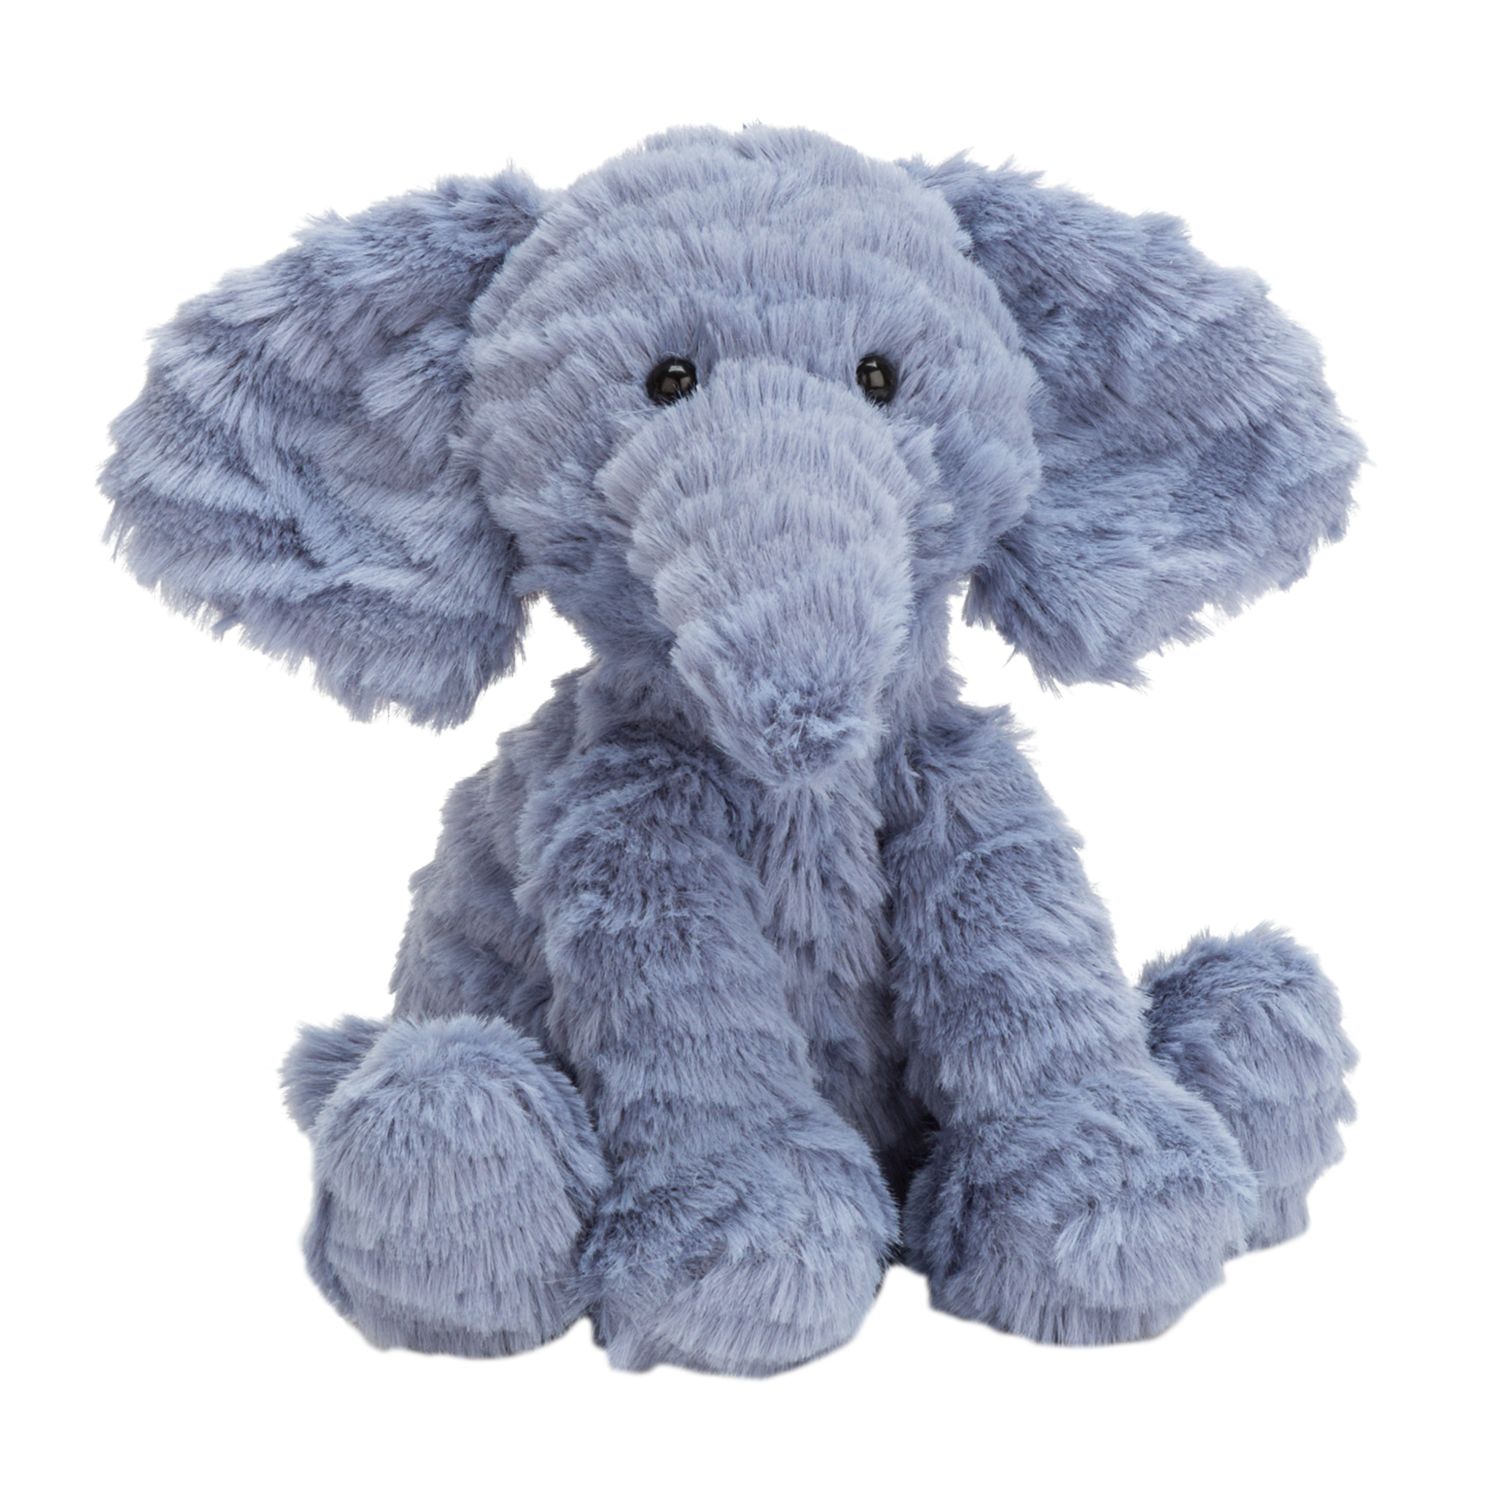 baby elephant soft toys